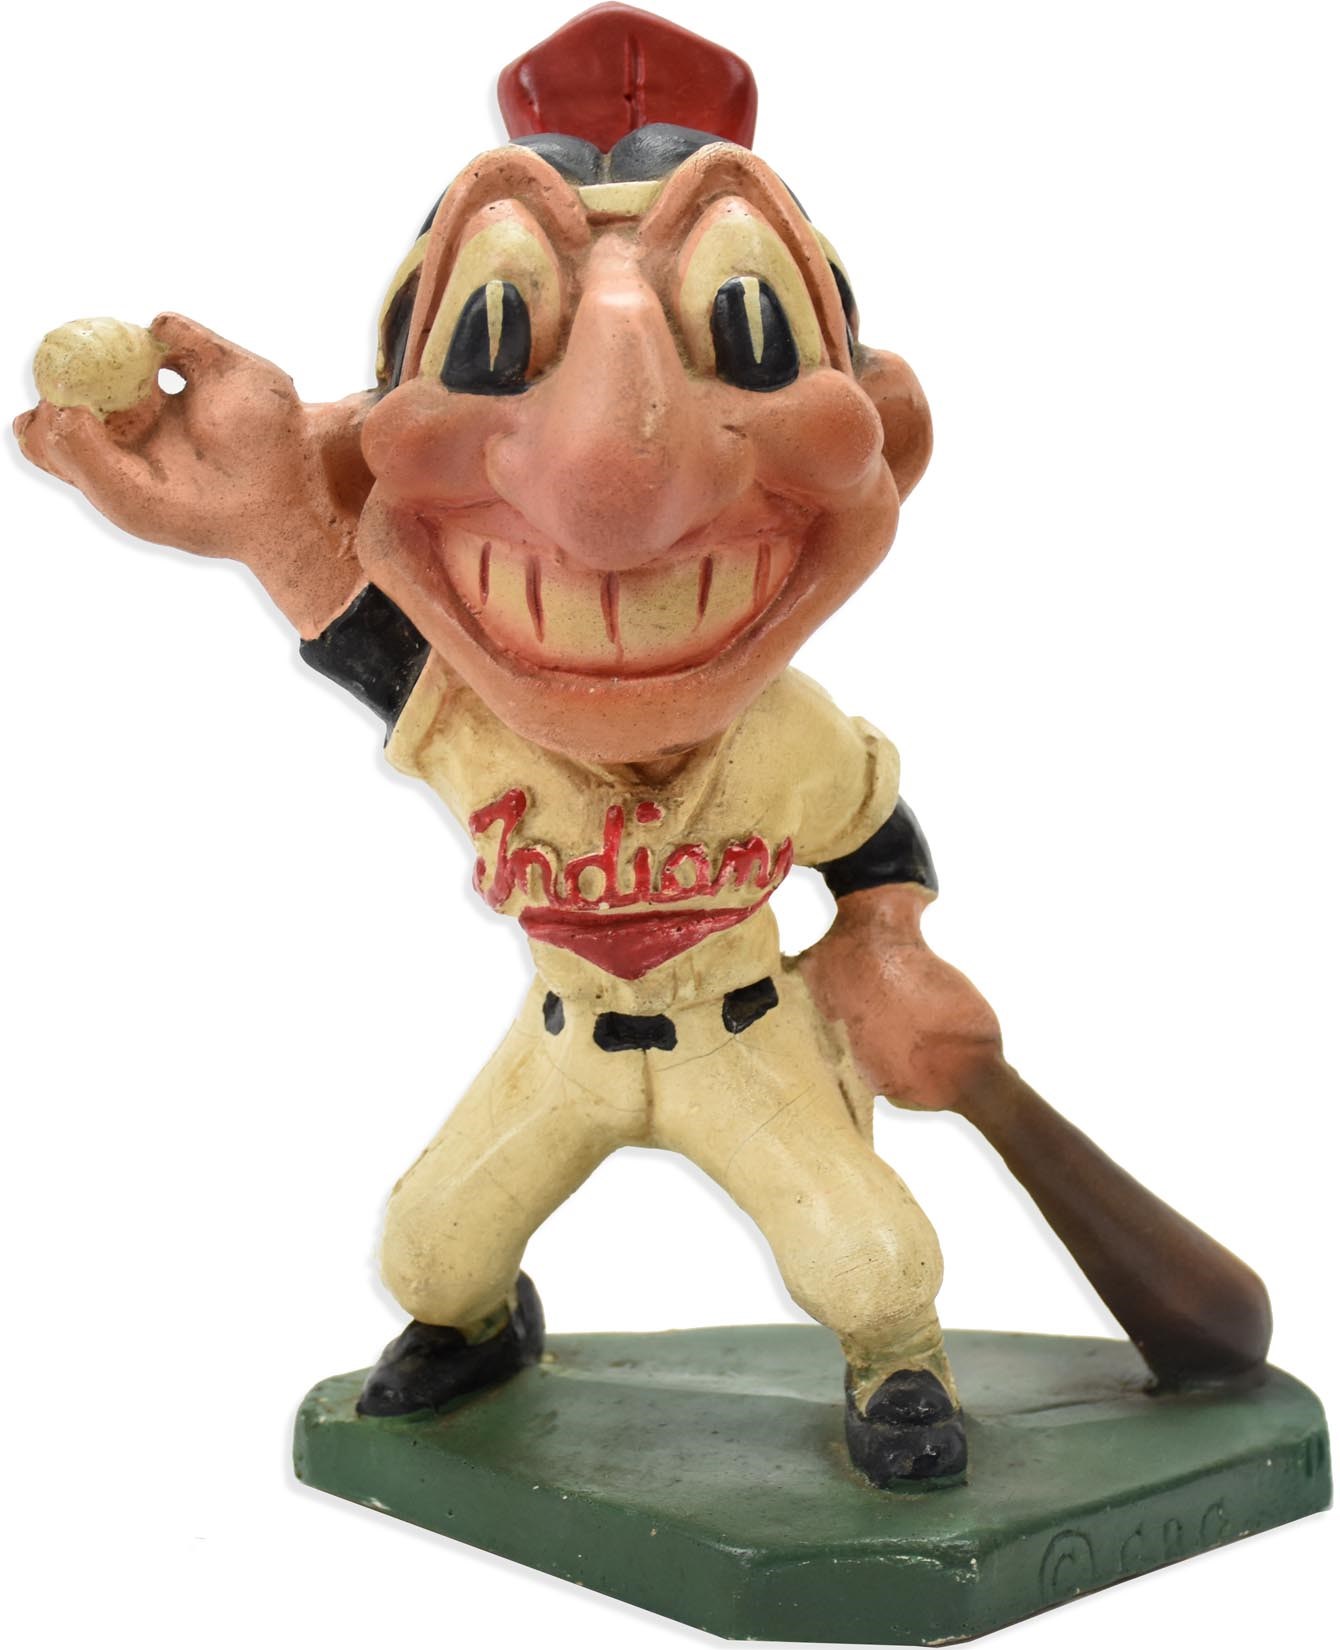 Baseball Memorabilia - 1947 Cleveland Indians Statue by Mazzolini